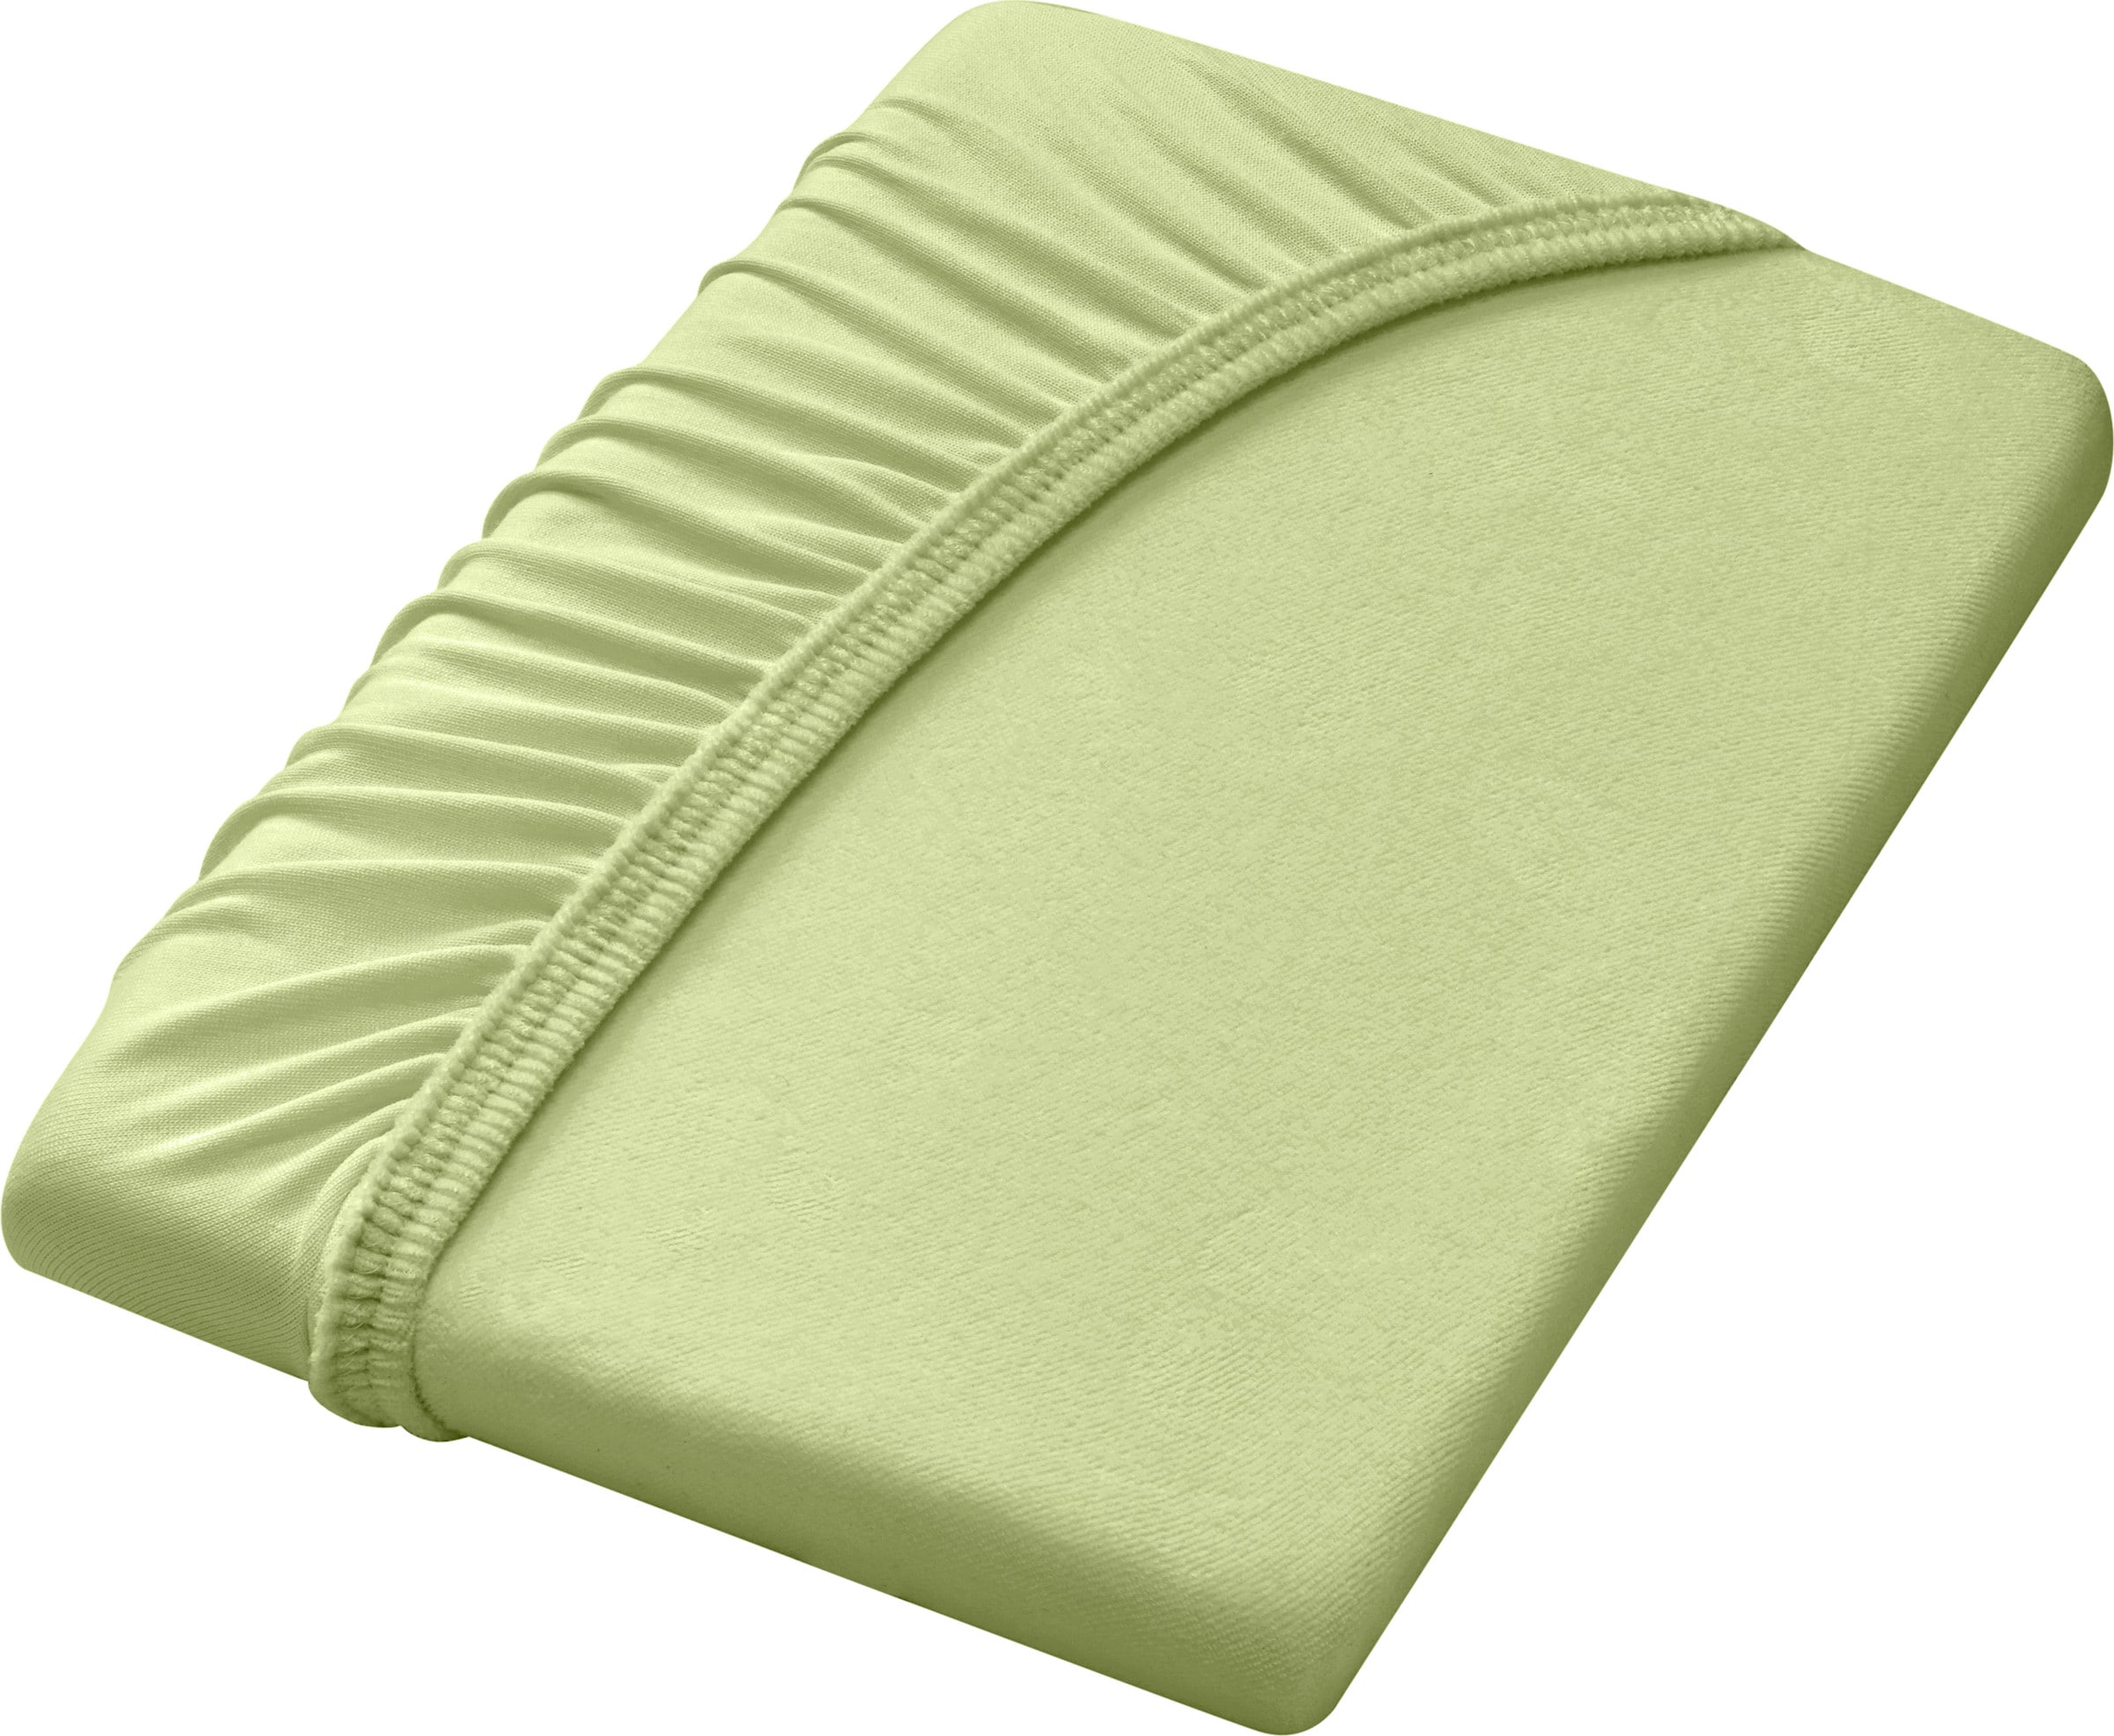 Bett mach günstig Kaufen-Spannbetttuch in grün von Dormisette. Spannbetttuch in grün von Dormisette <![CDATA[Spannbetttuch in bügelfreier Nicki-Qualität– die leicht angeraute Oberfläche macht sie samtig weich, kuschelig und angenehm wärmend. Mit Rundum-Gummizug.]]